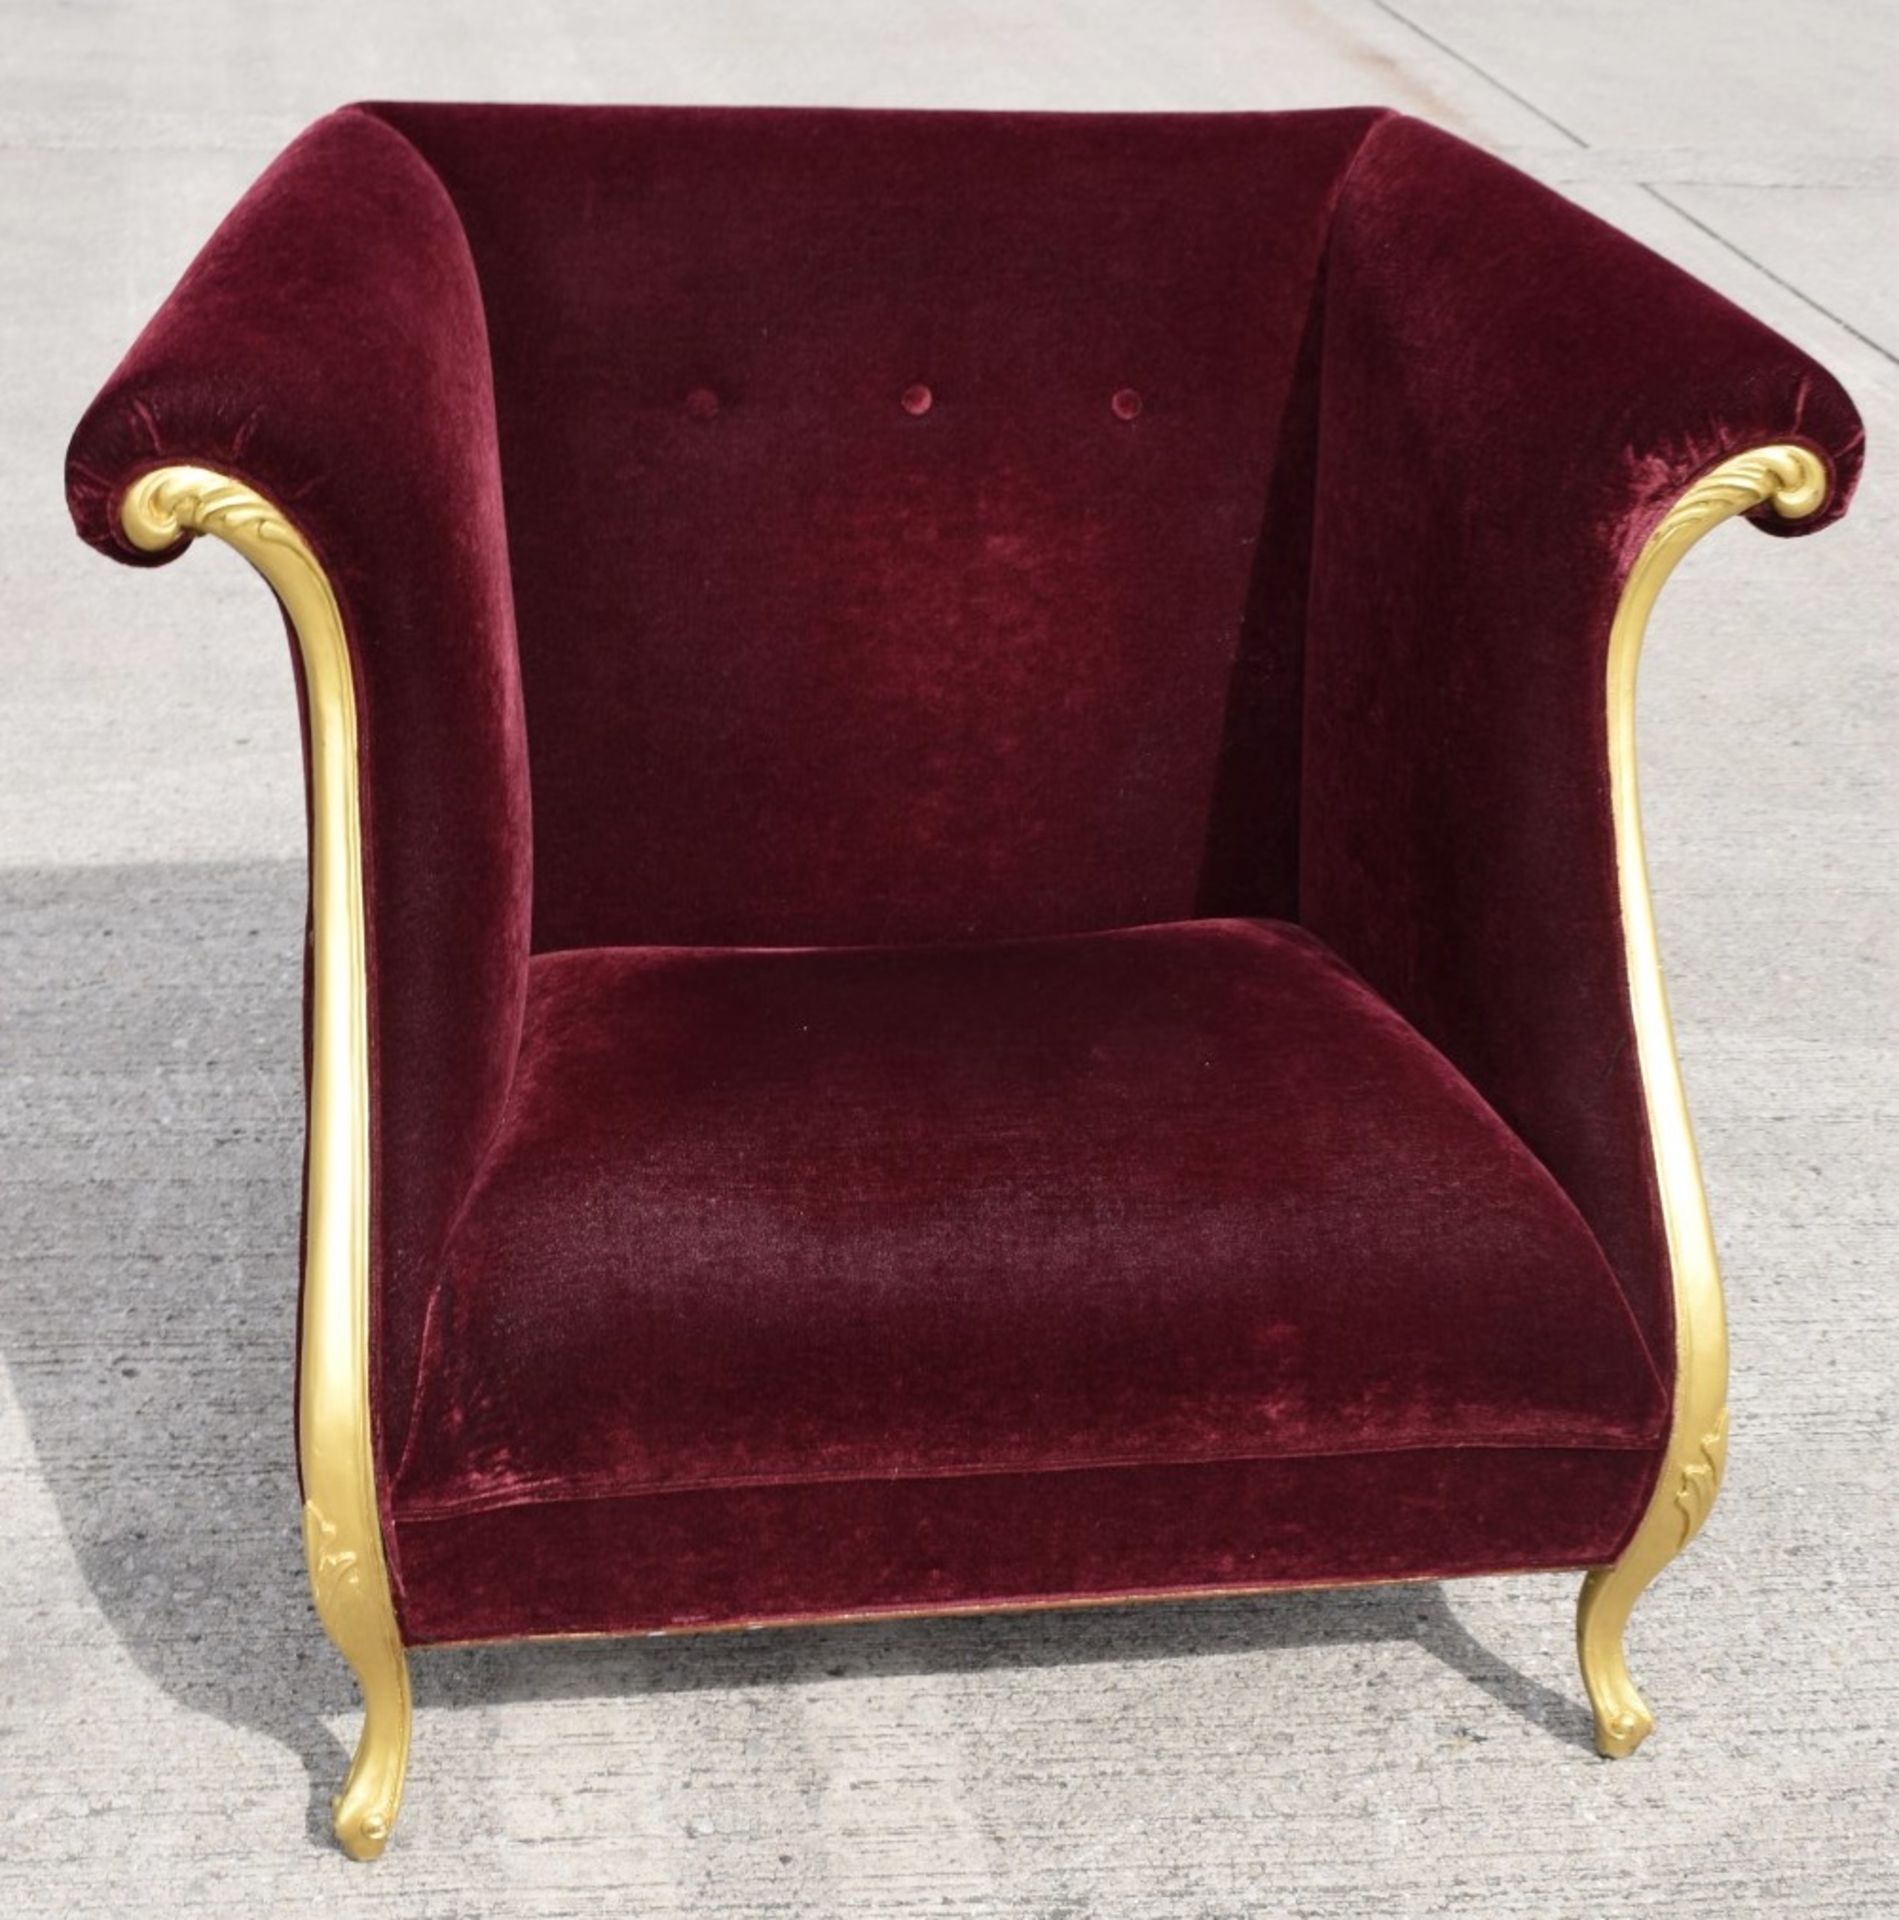 1 x CHRISTOPHER GUY Bespoke Opulent Velvet Upholstered Oversized Armchair - Original Price £4,000 - Image 2 of 10